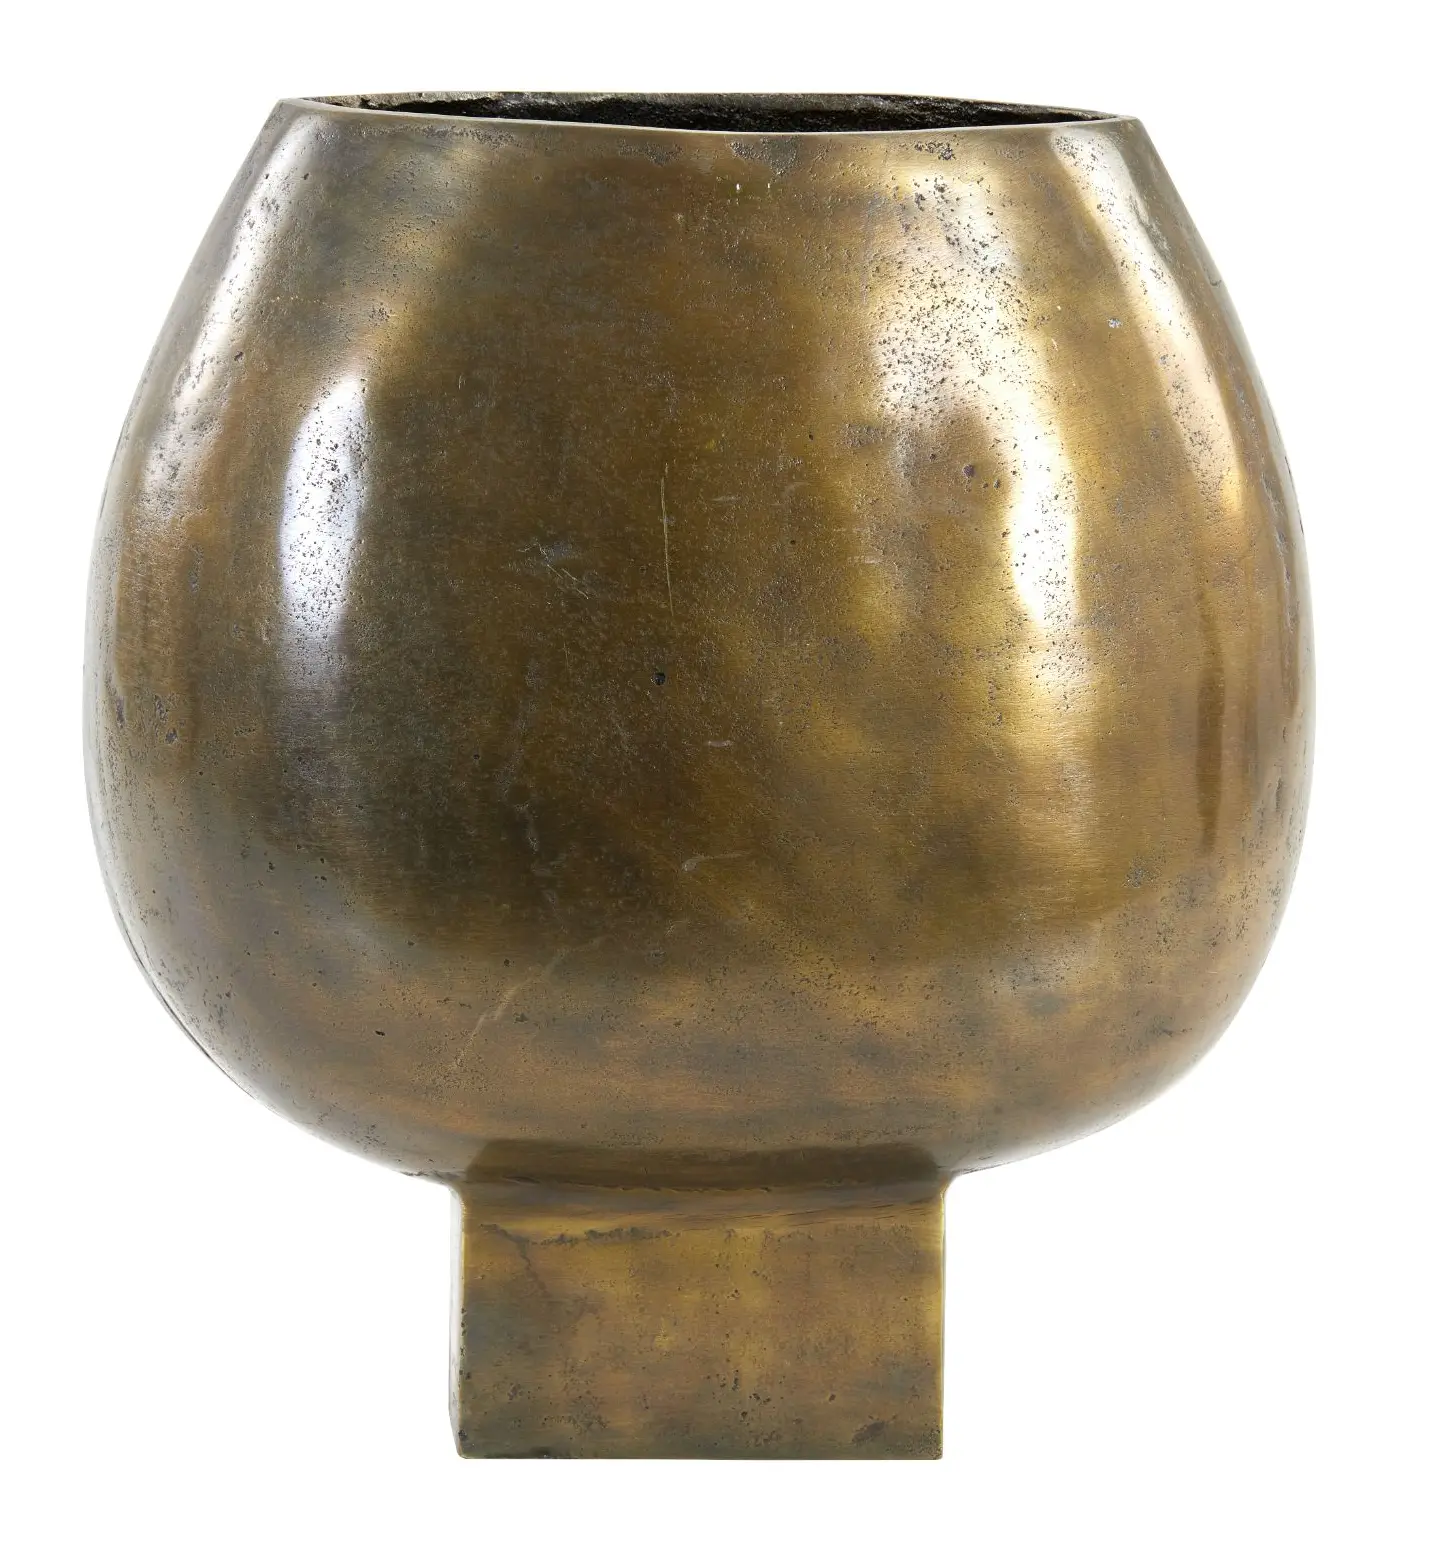 Vase Partida Bronze